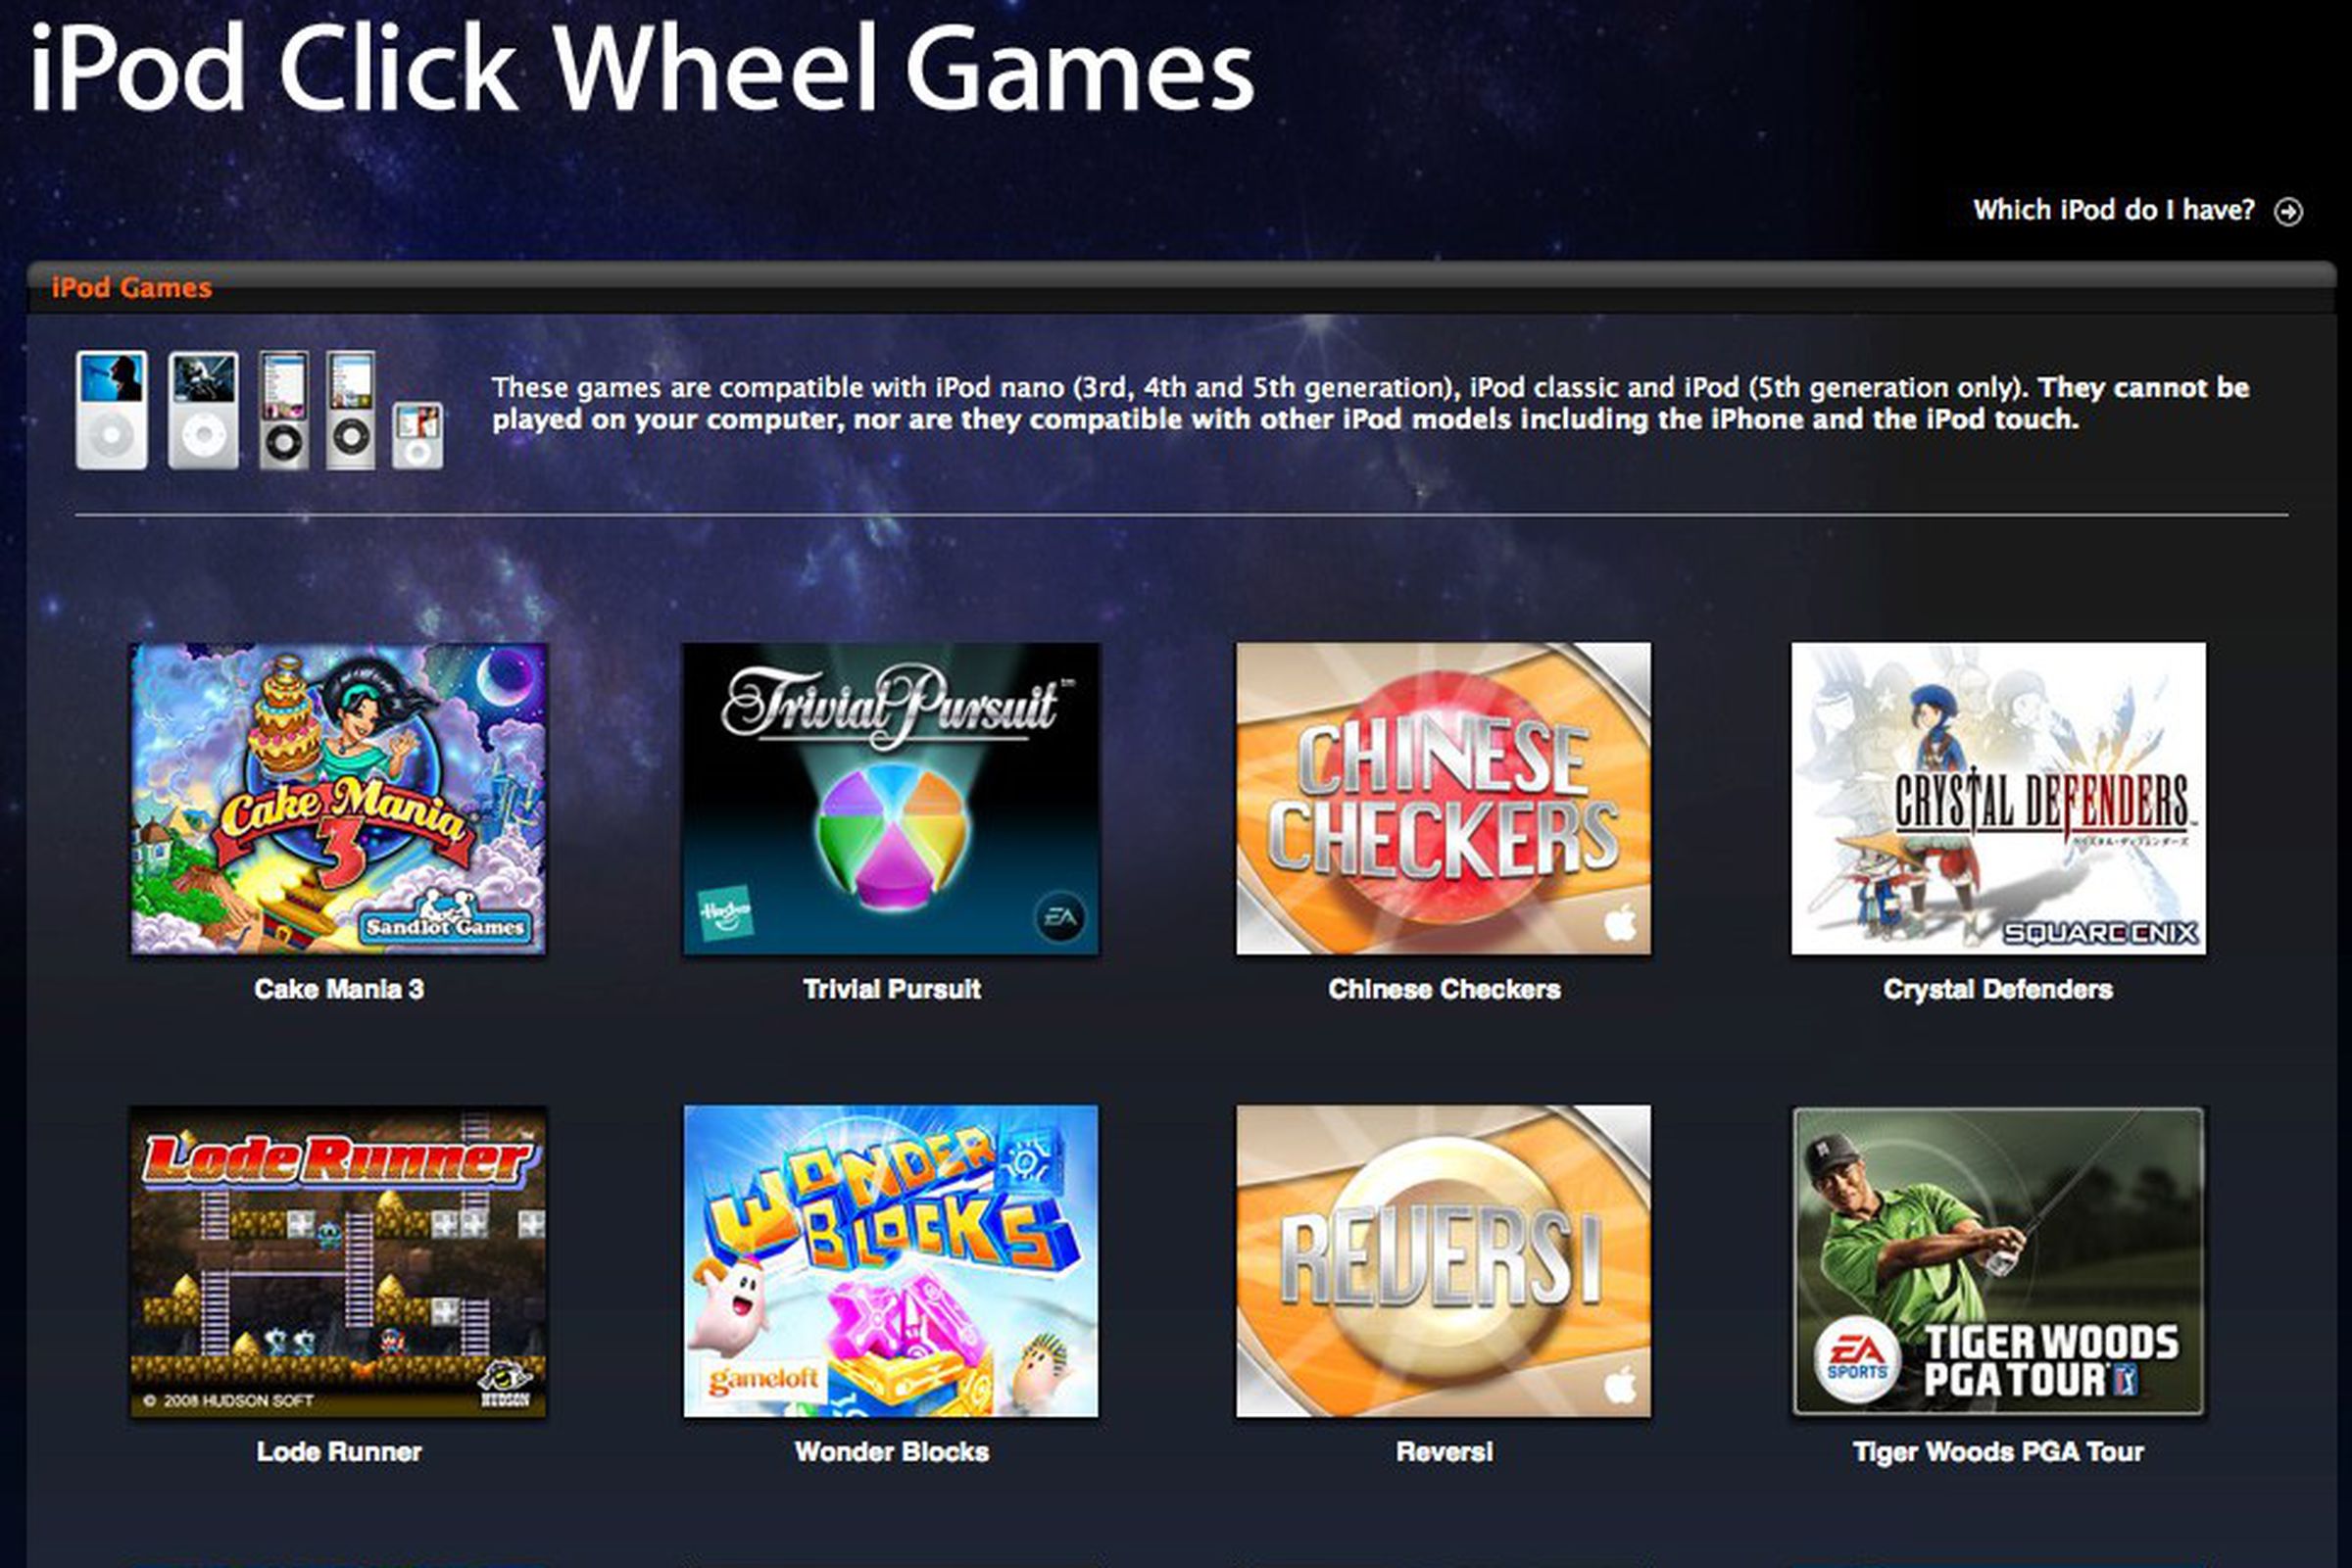 iPod Click Wheel Games